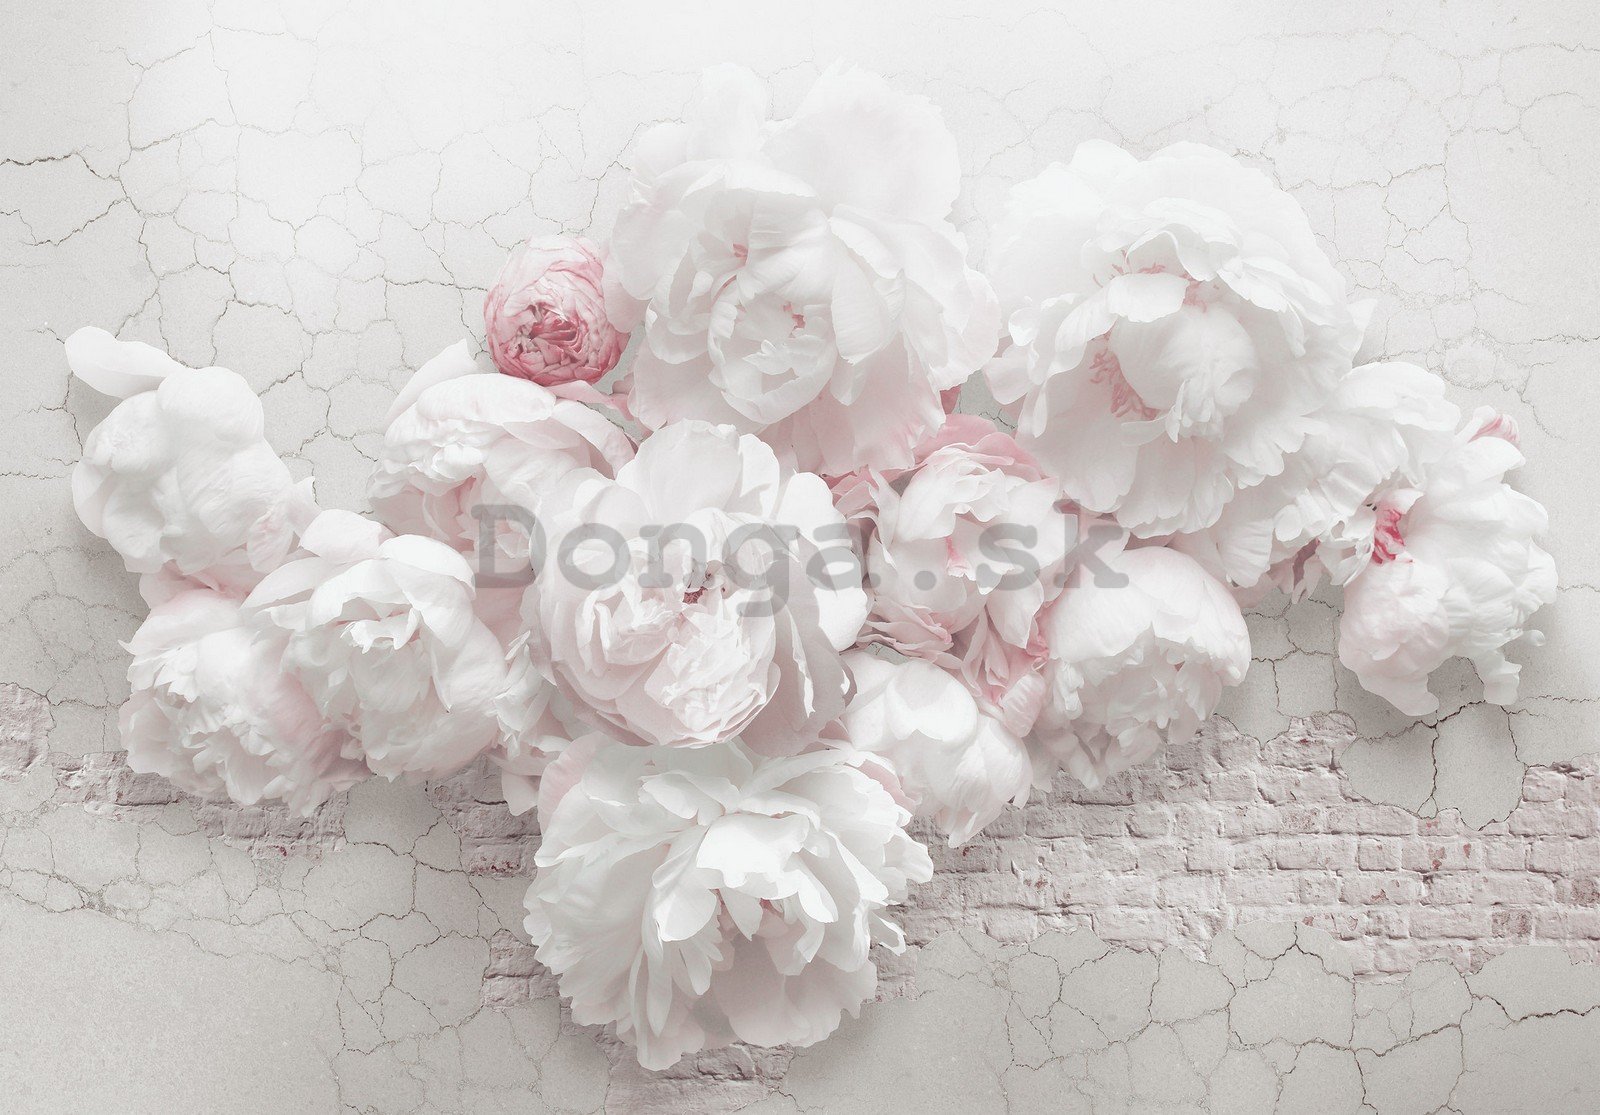 Fototapeta vliesová: Bílé růže na zdi - 368x254 cm